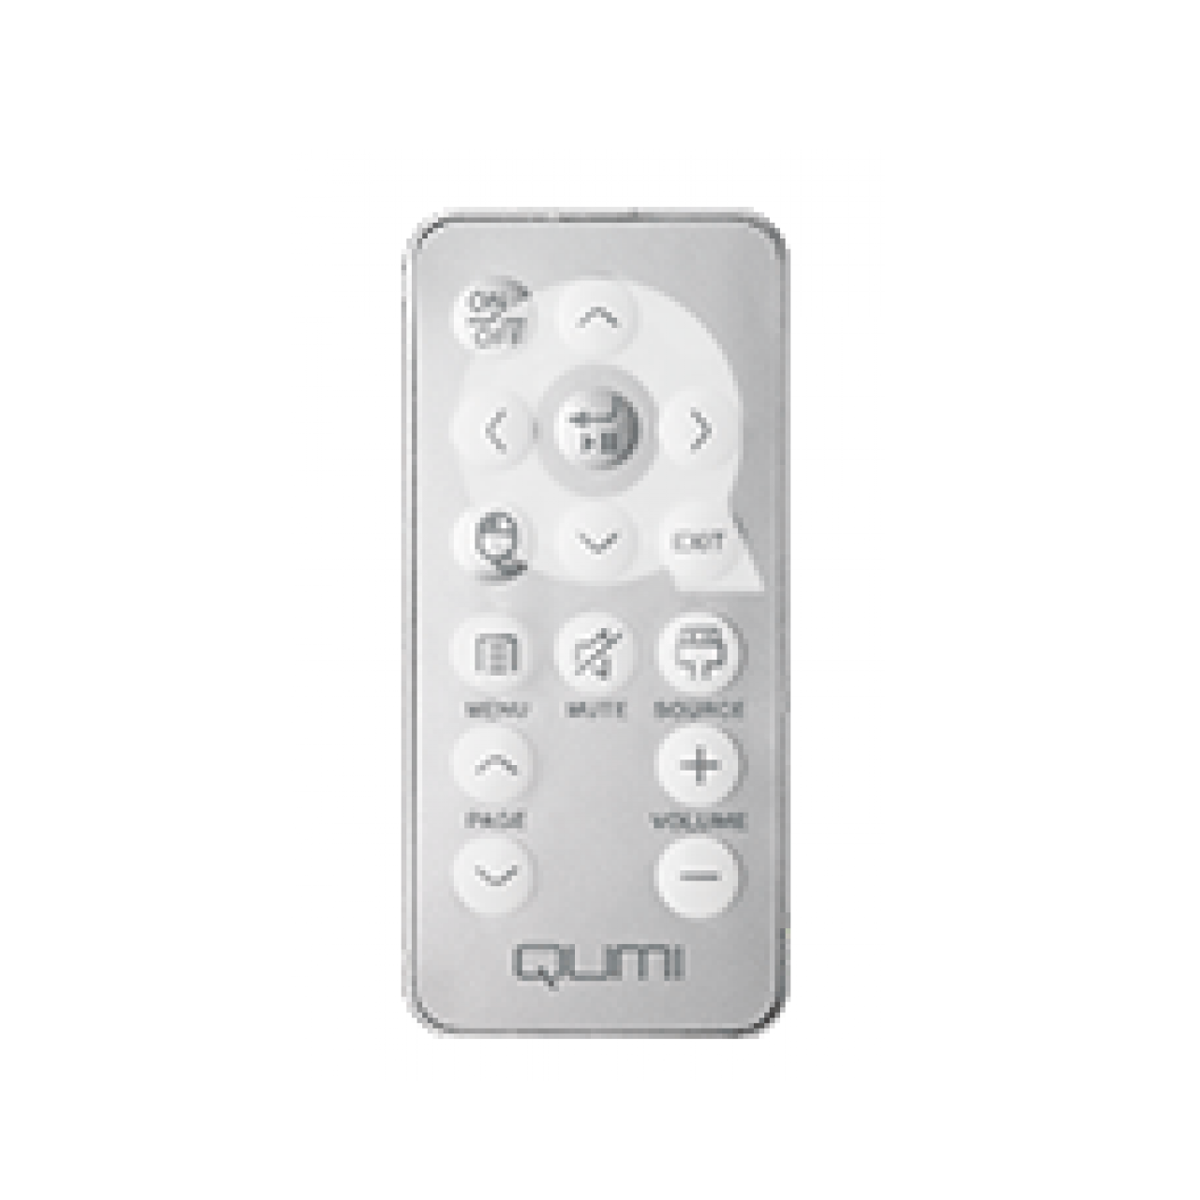 Remote for QUMI Q5